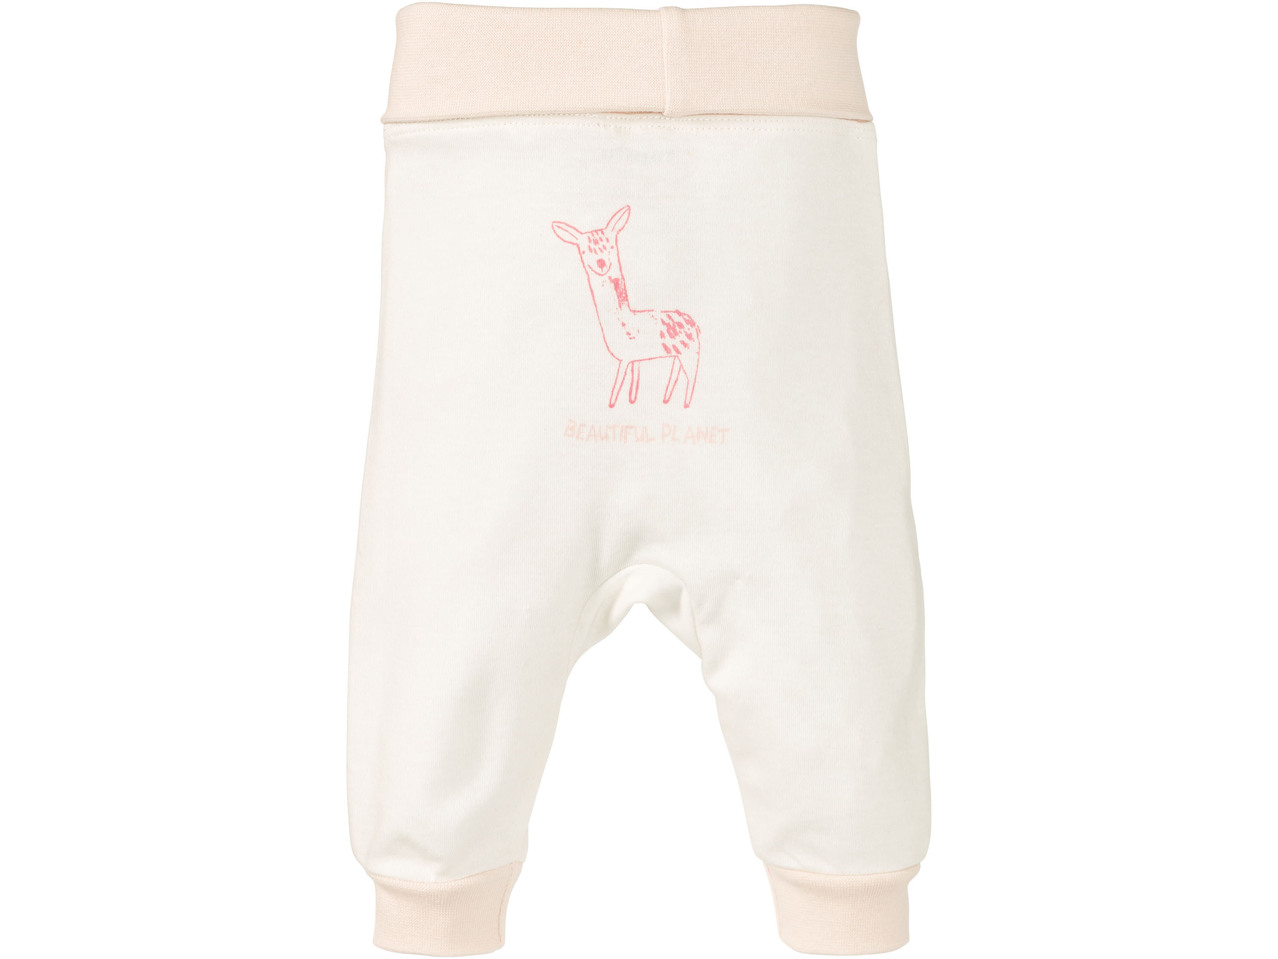 Pantaloni sportivi da neonata, 2 pezzi